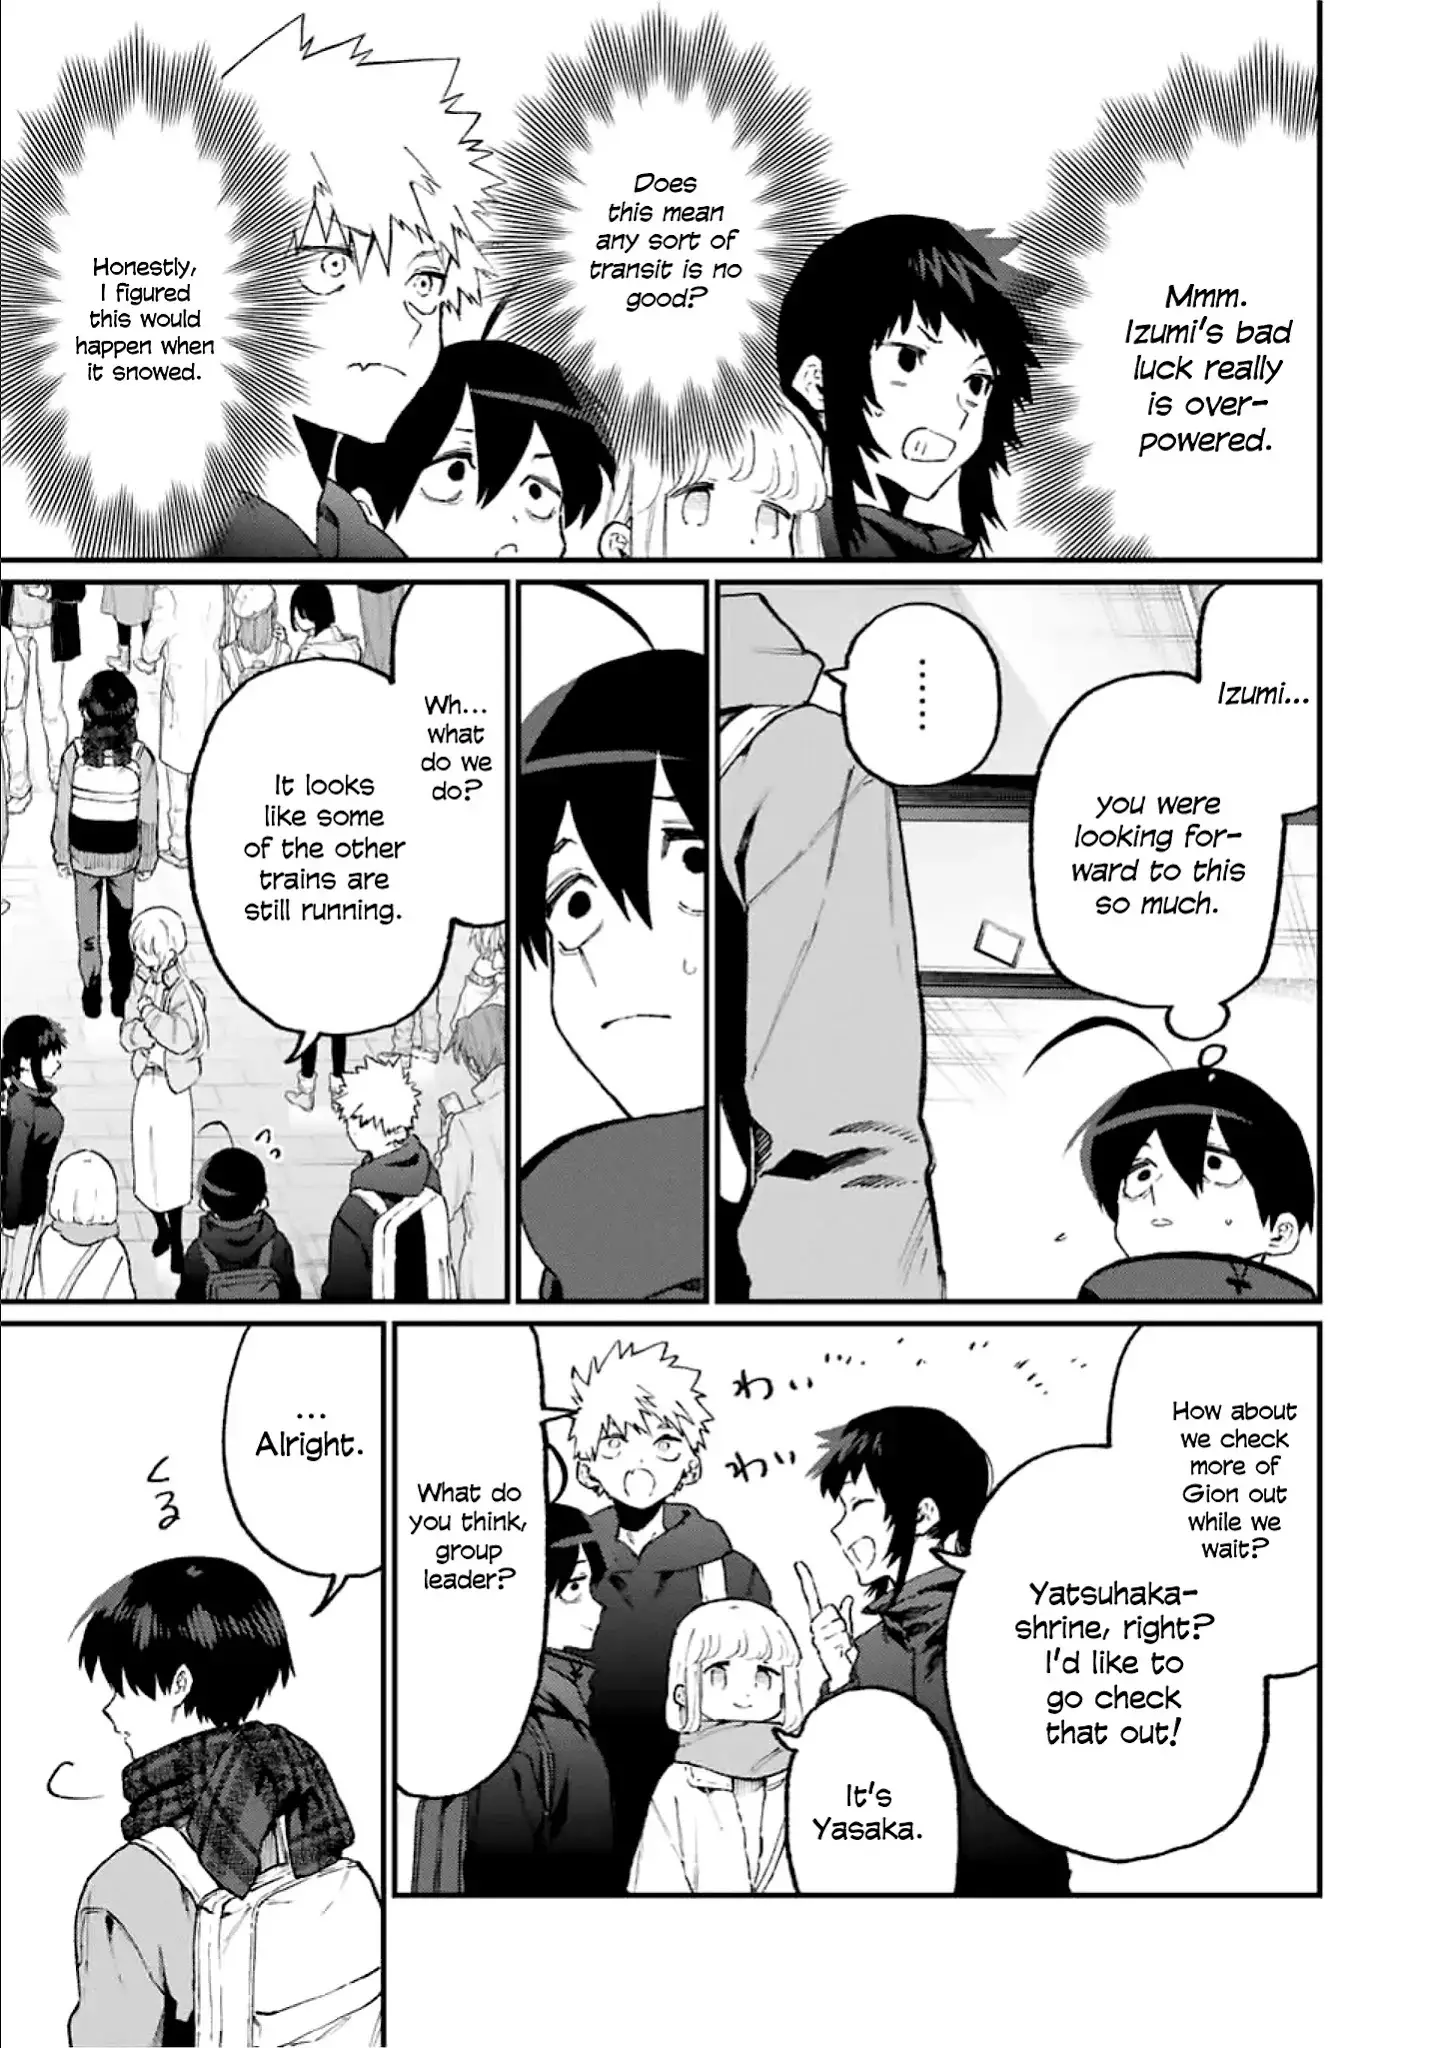 Shikimori's Not Just A Cutie - 94 page 4